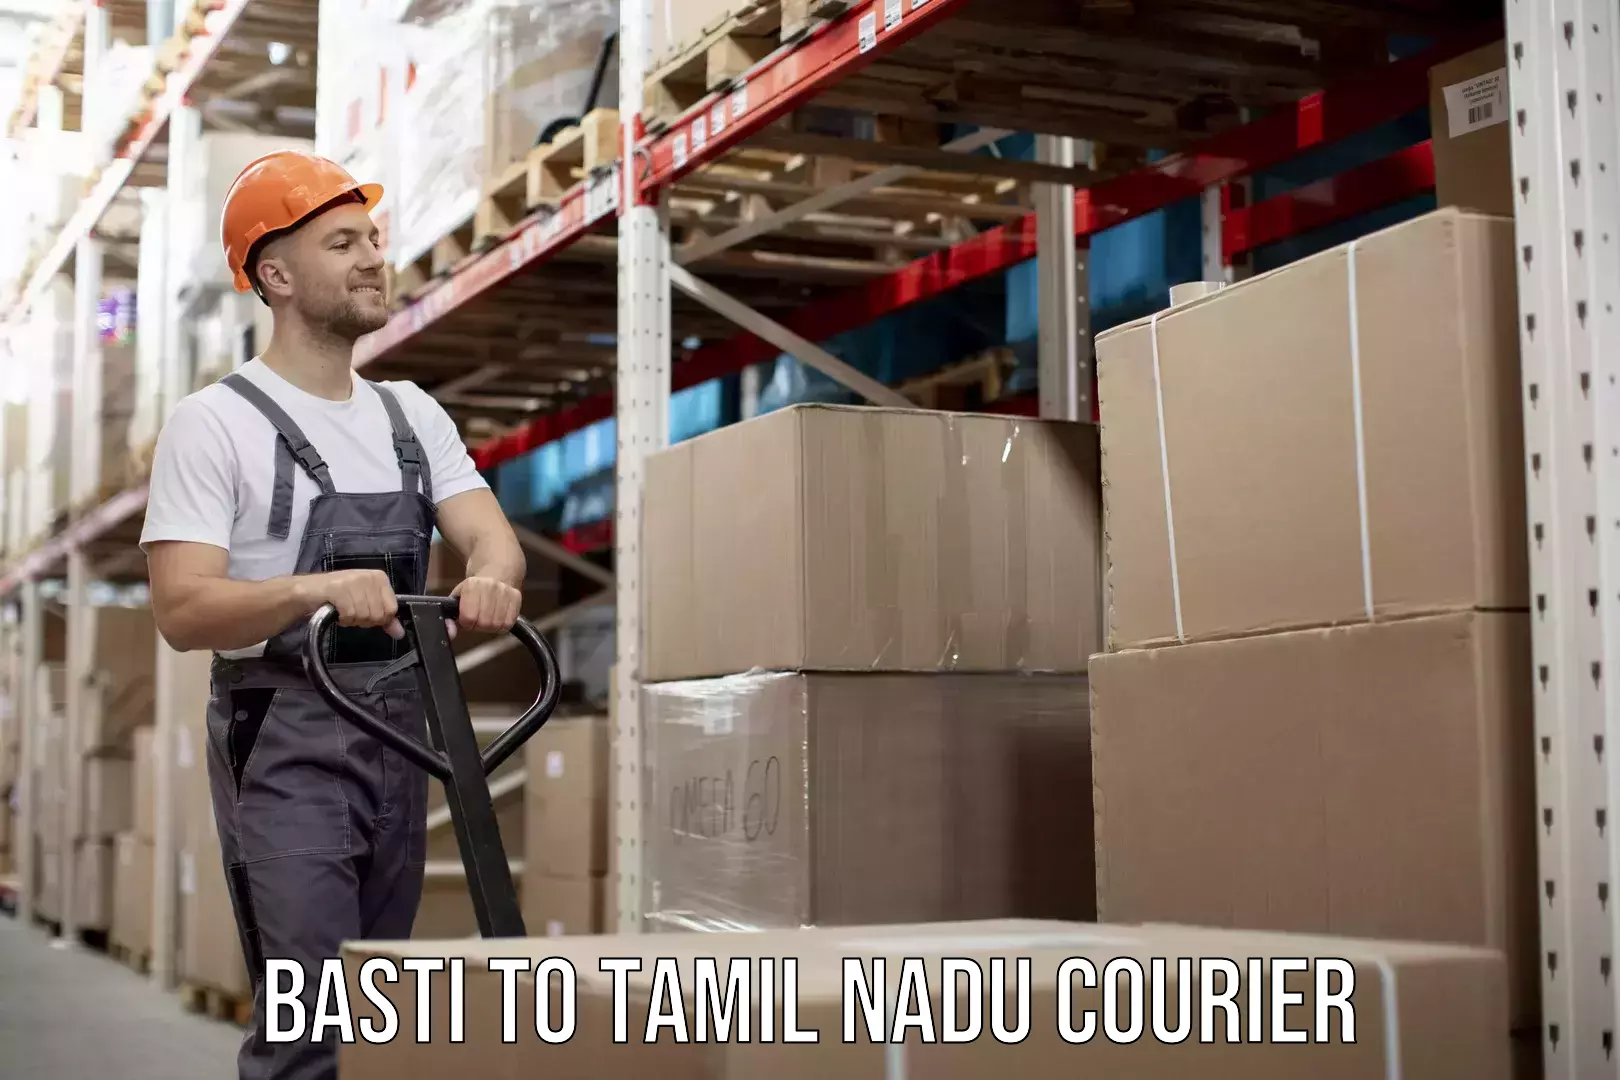 Innovative courier solutions Basti to Tamil Nadu